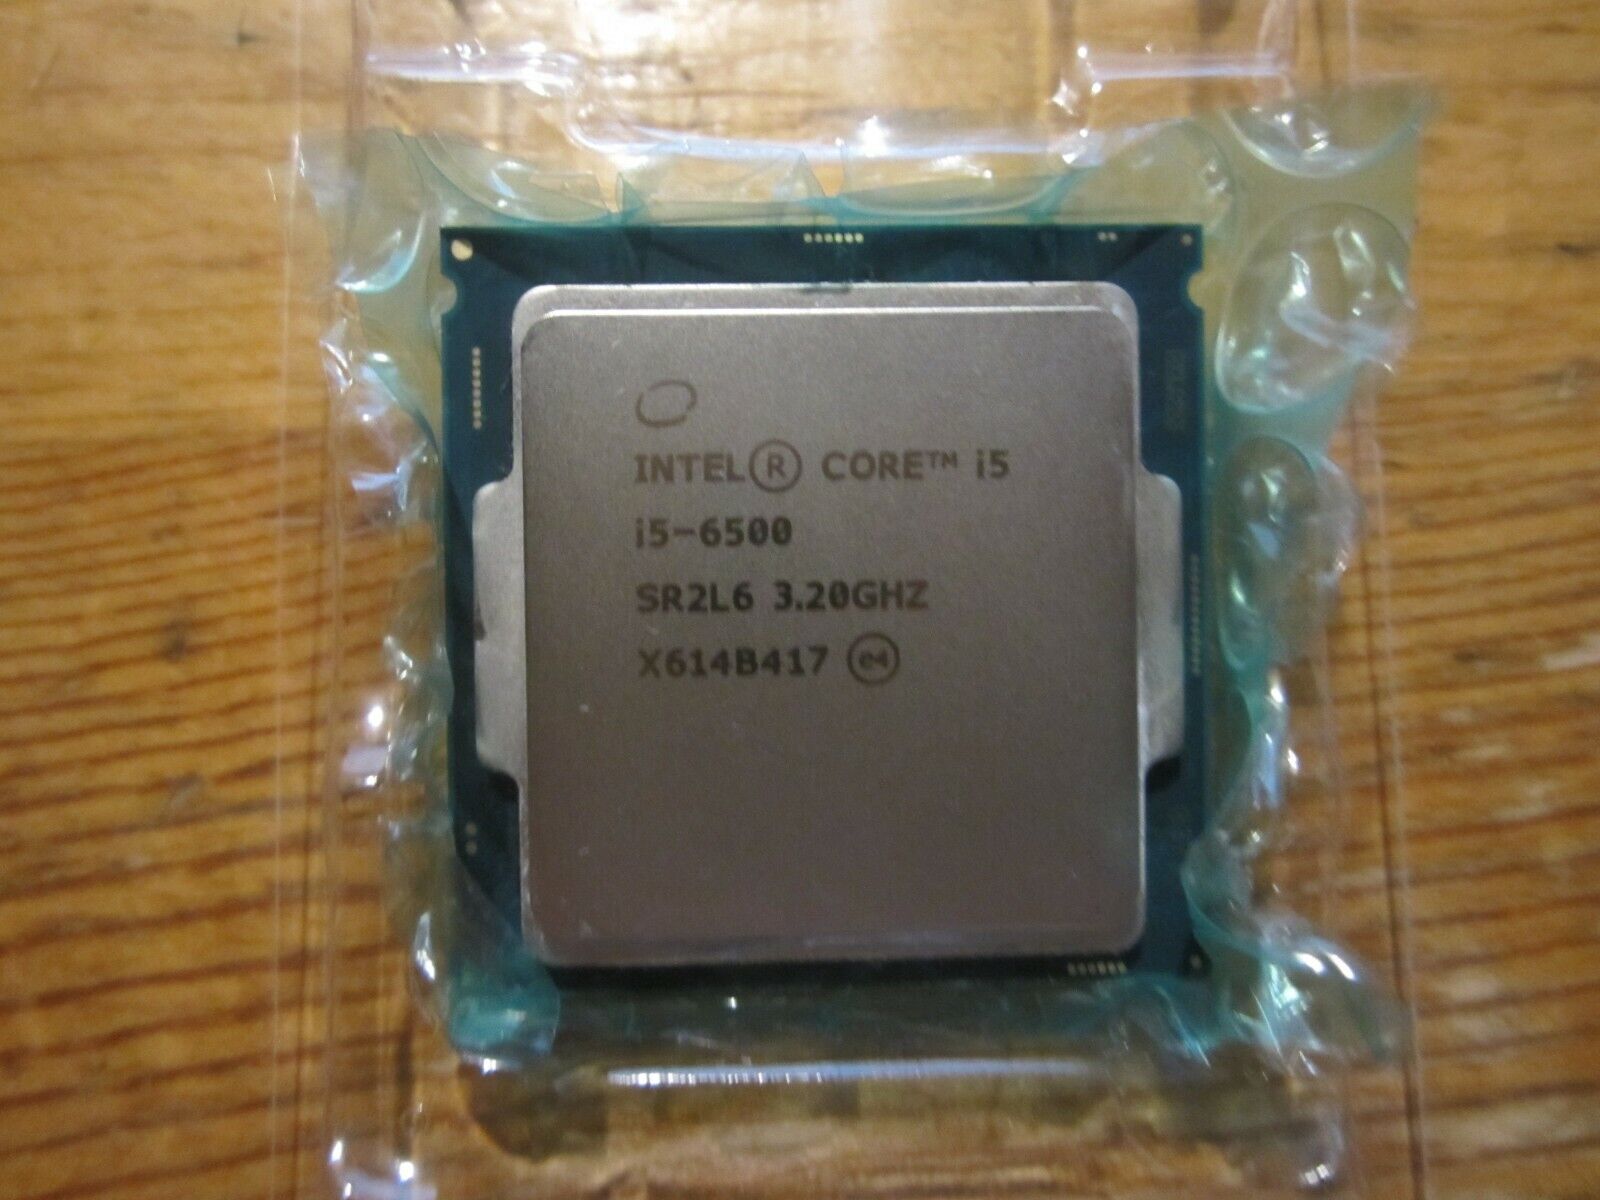 Intel Core i5-6500 LGA 1151 Quad-core 3.2 GHz SR2L6 SR2BX Processor CPU